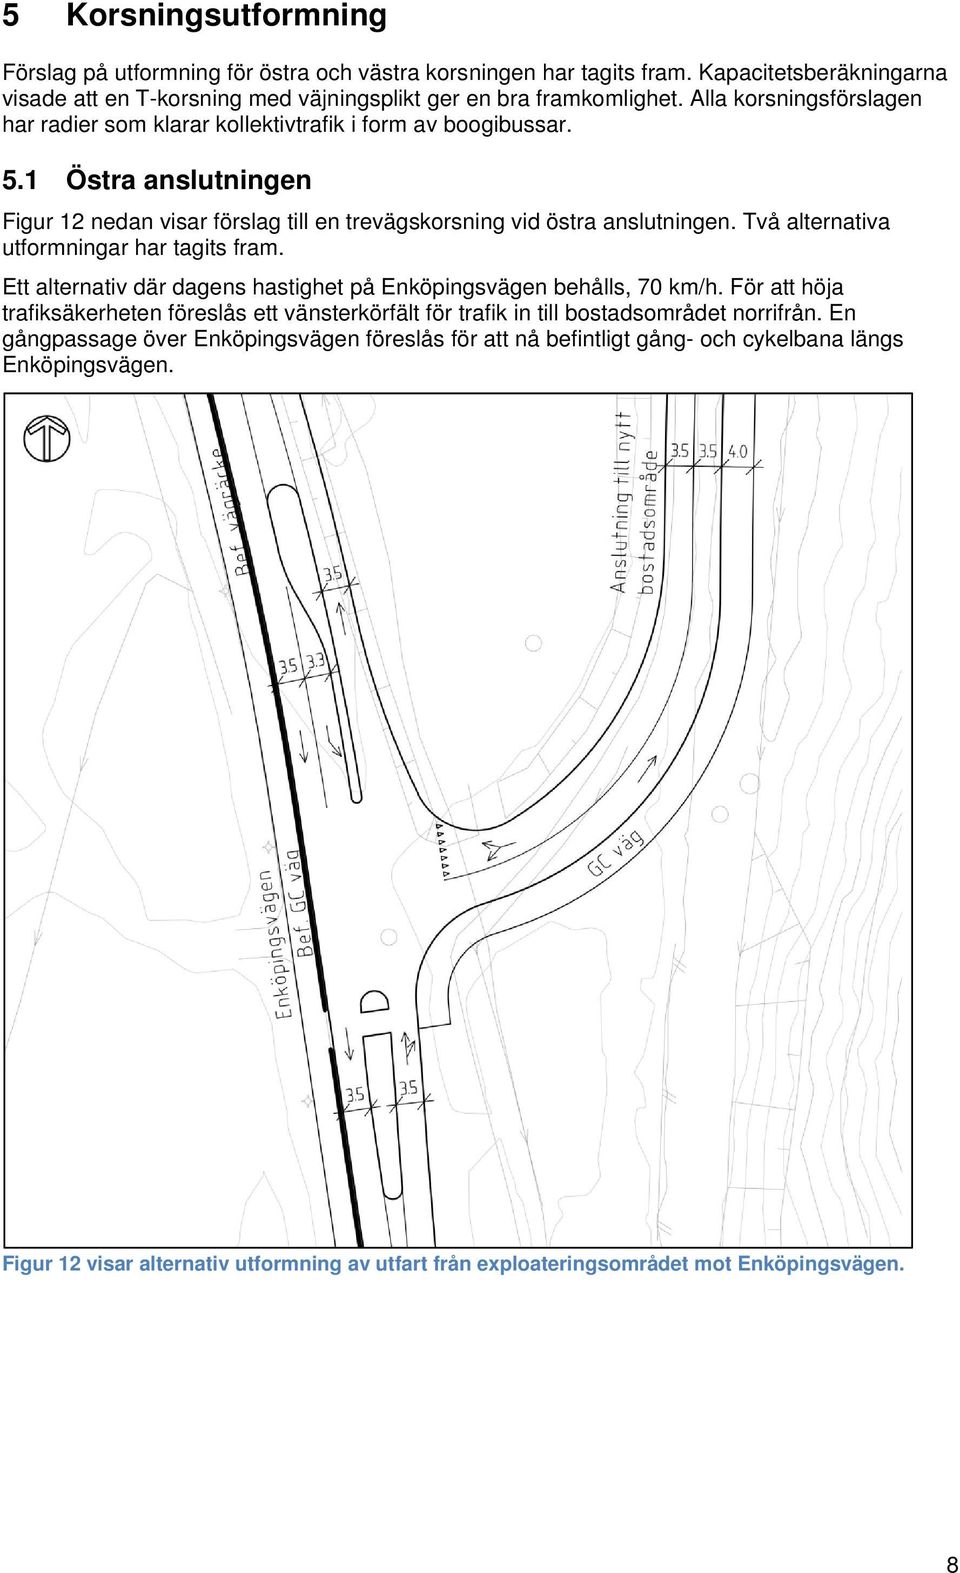 Två alternativa utformningar har tagits fram. Ett alternativ där dagens hastighet på Enköpingsvägen behålls, 70 km/h.